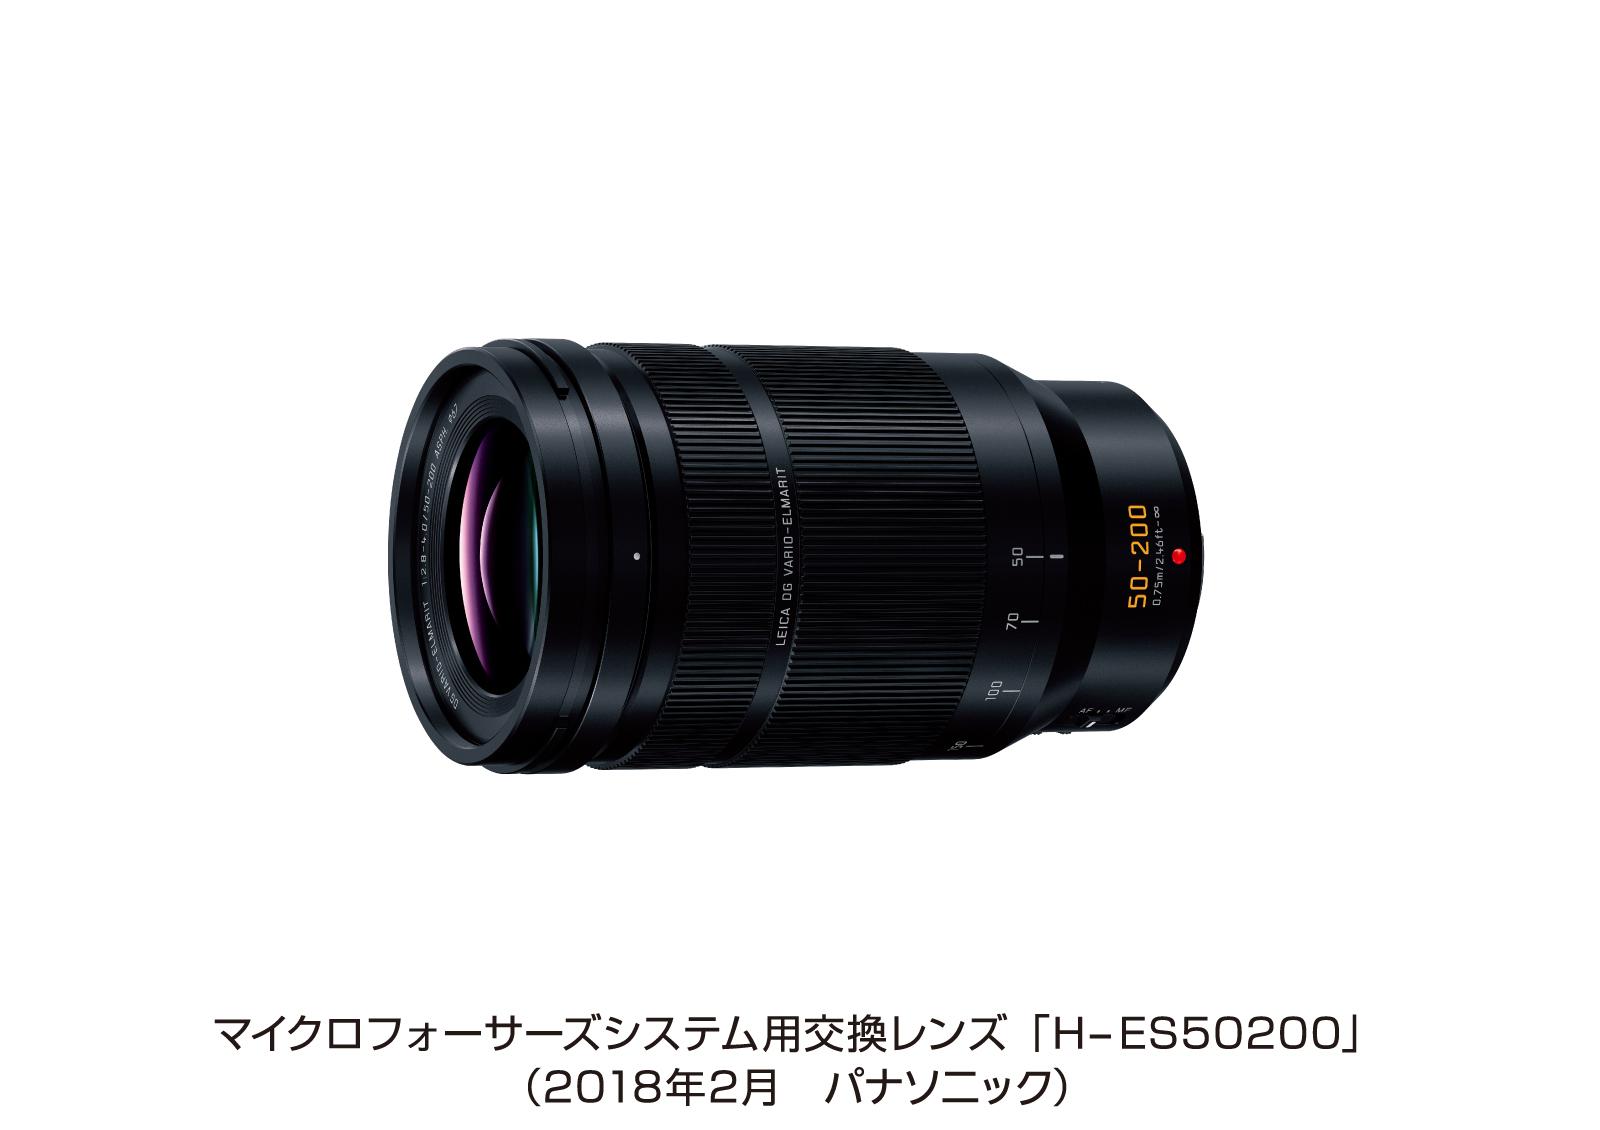 マイクロフォーサーズシステム用交換レンズ「H-ES50200」